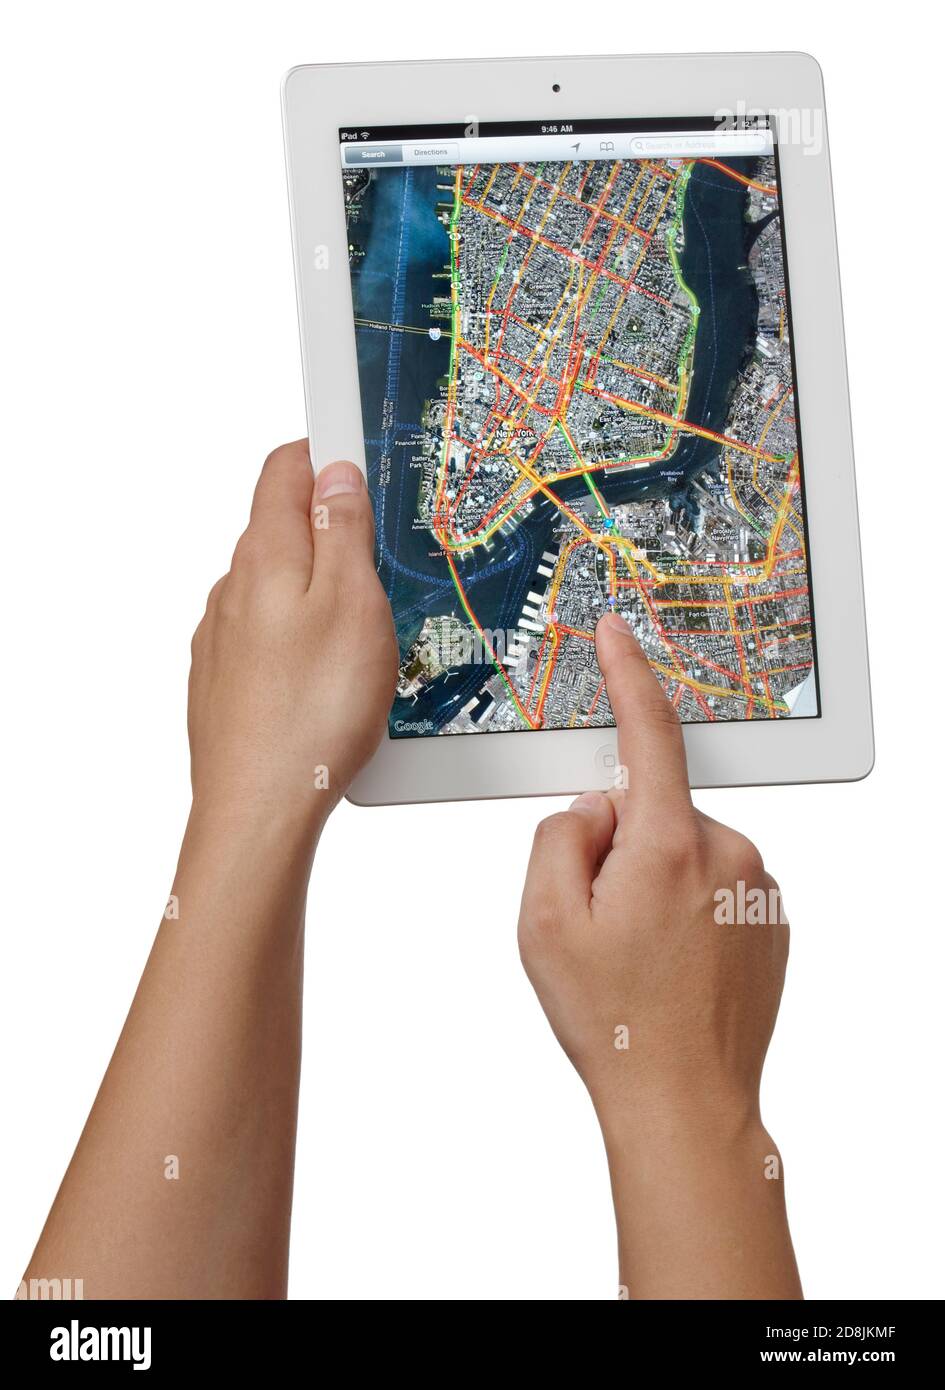 Personne tenant un iPad2 Apple entre ses mains à l'aide de l'application cartes et photographiée sur fond blanc. Banque D'Images